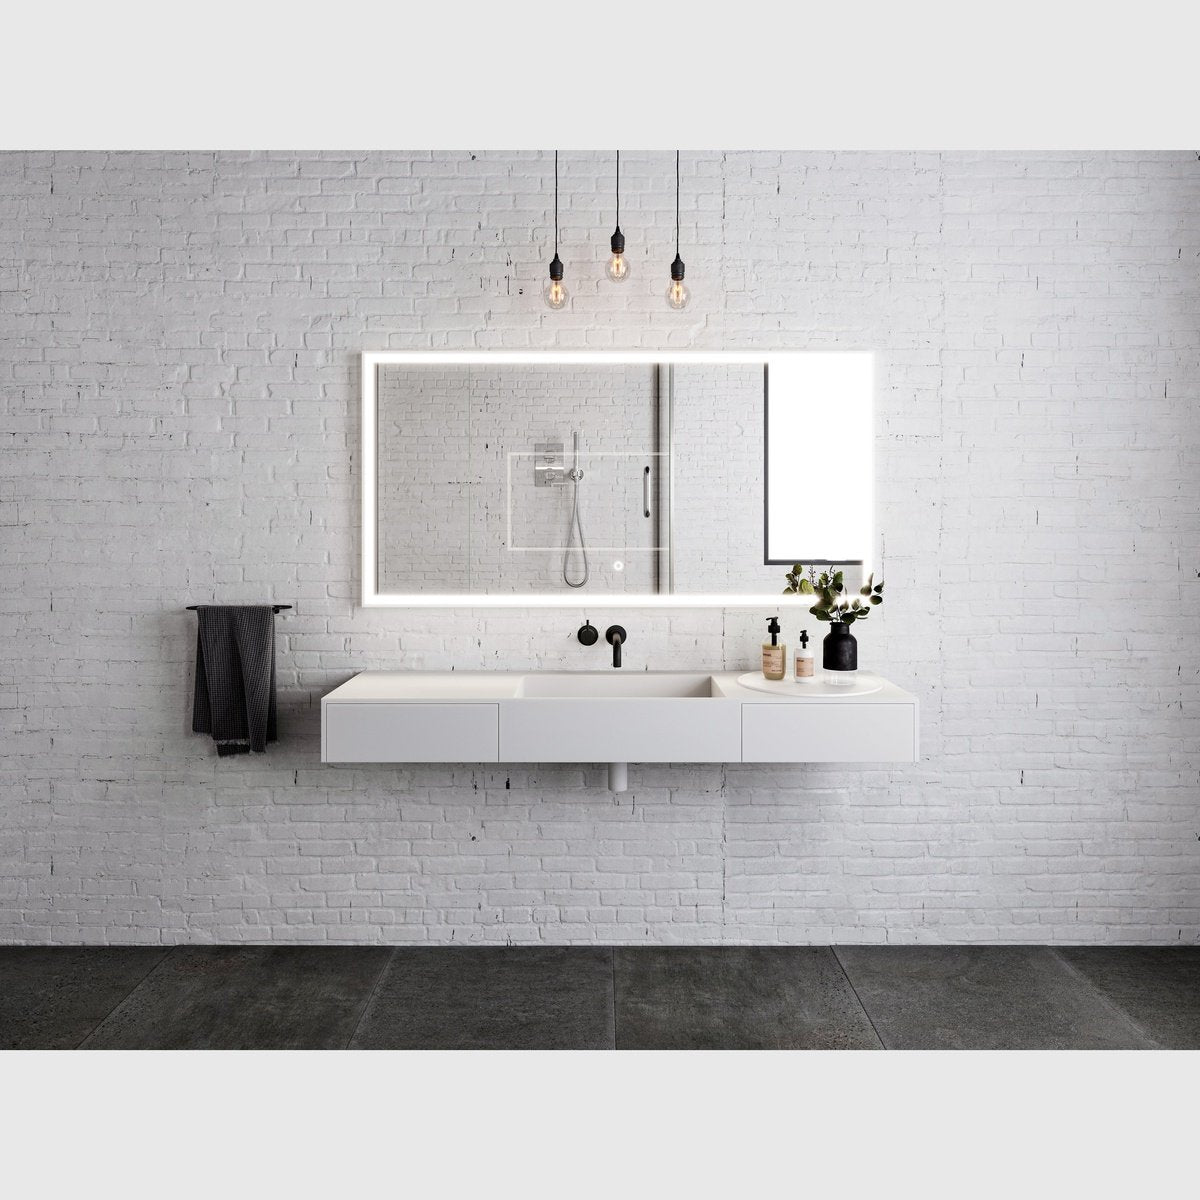 Se Copenhagen Bath Enkøping 100 håndvask - mat hvid (pre-order maj) hos Bad&Design